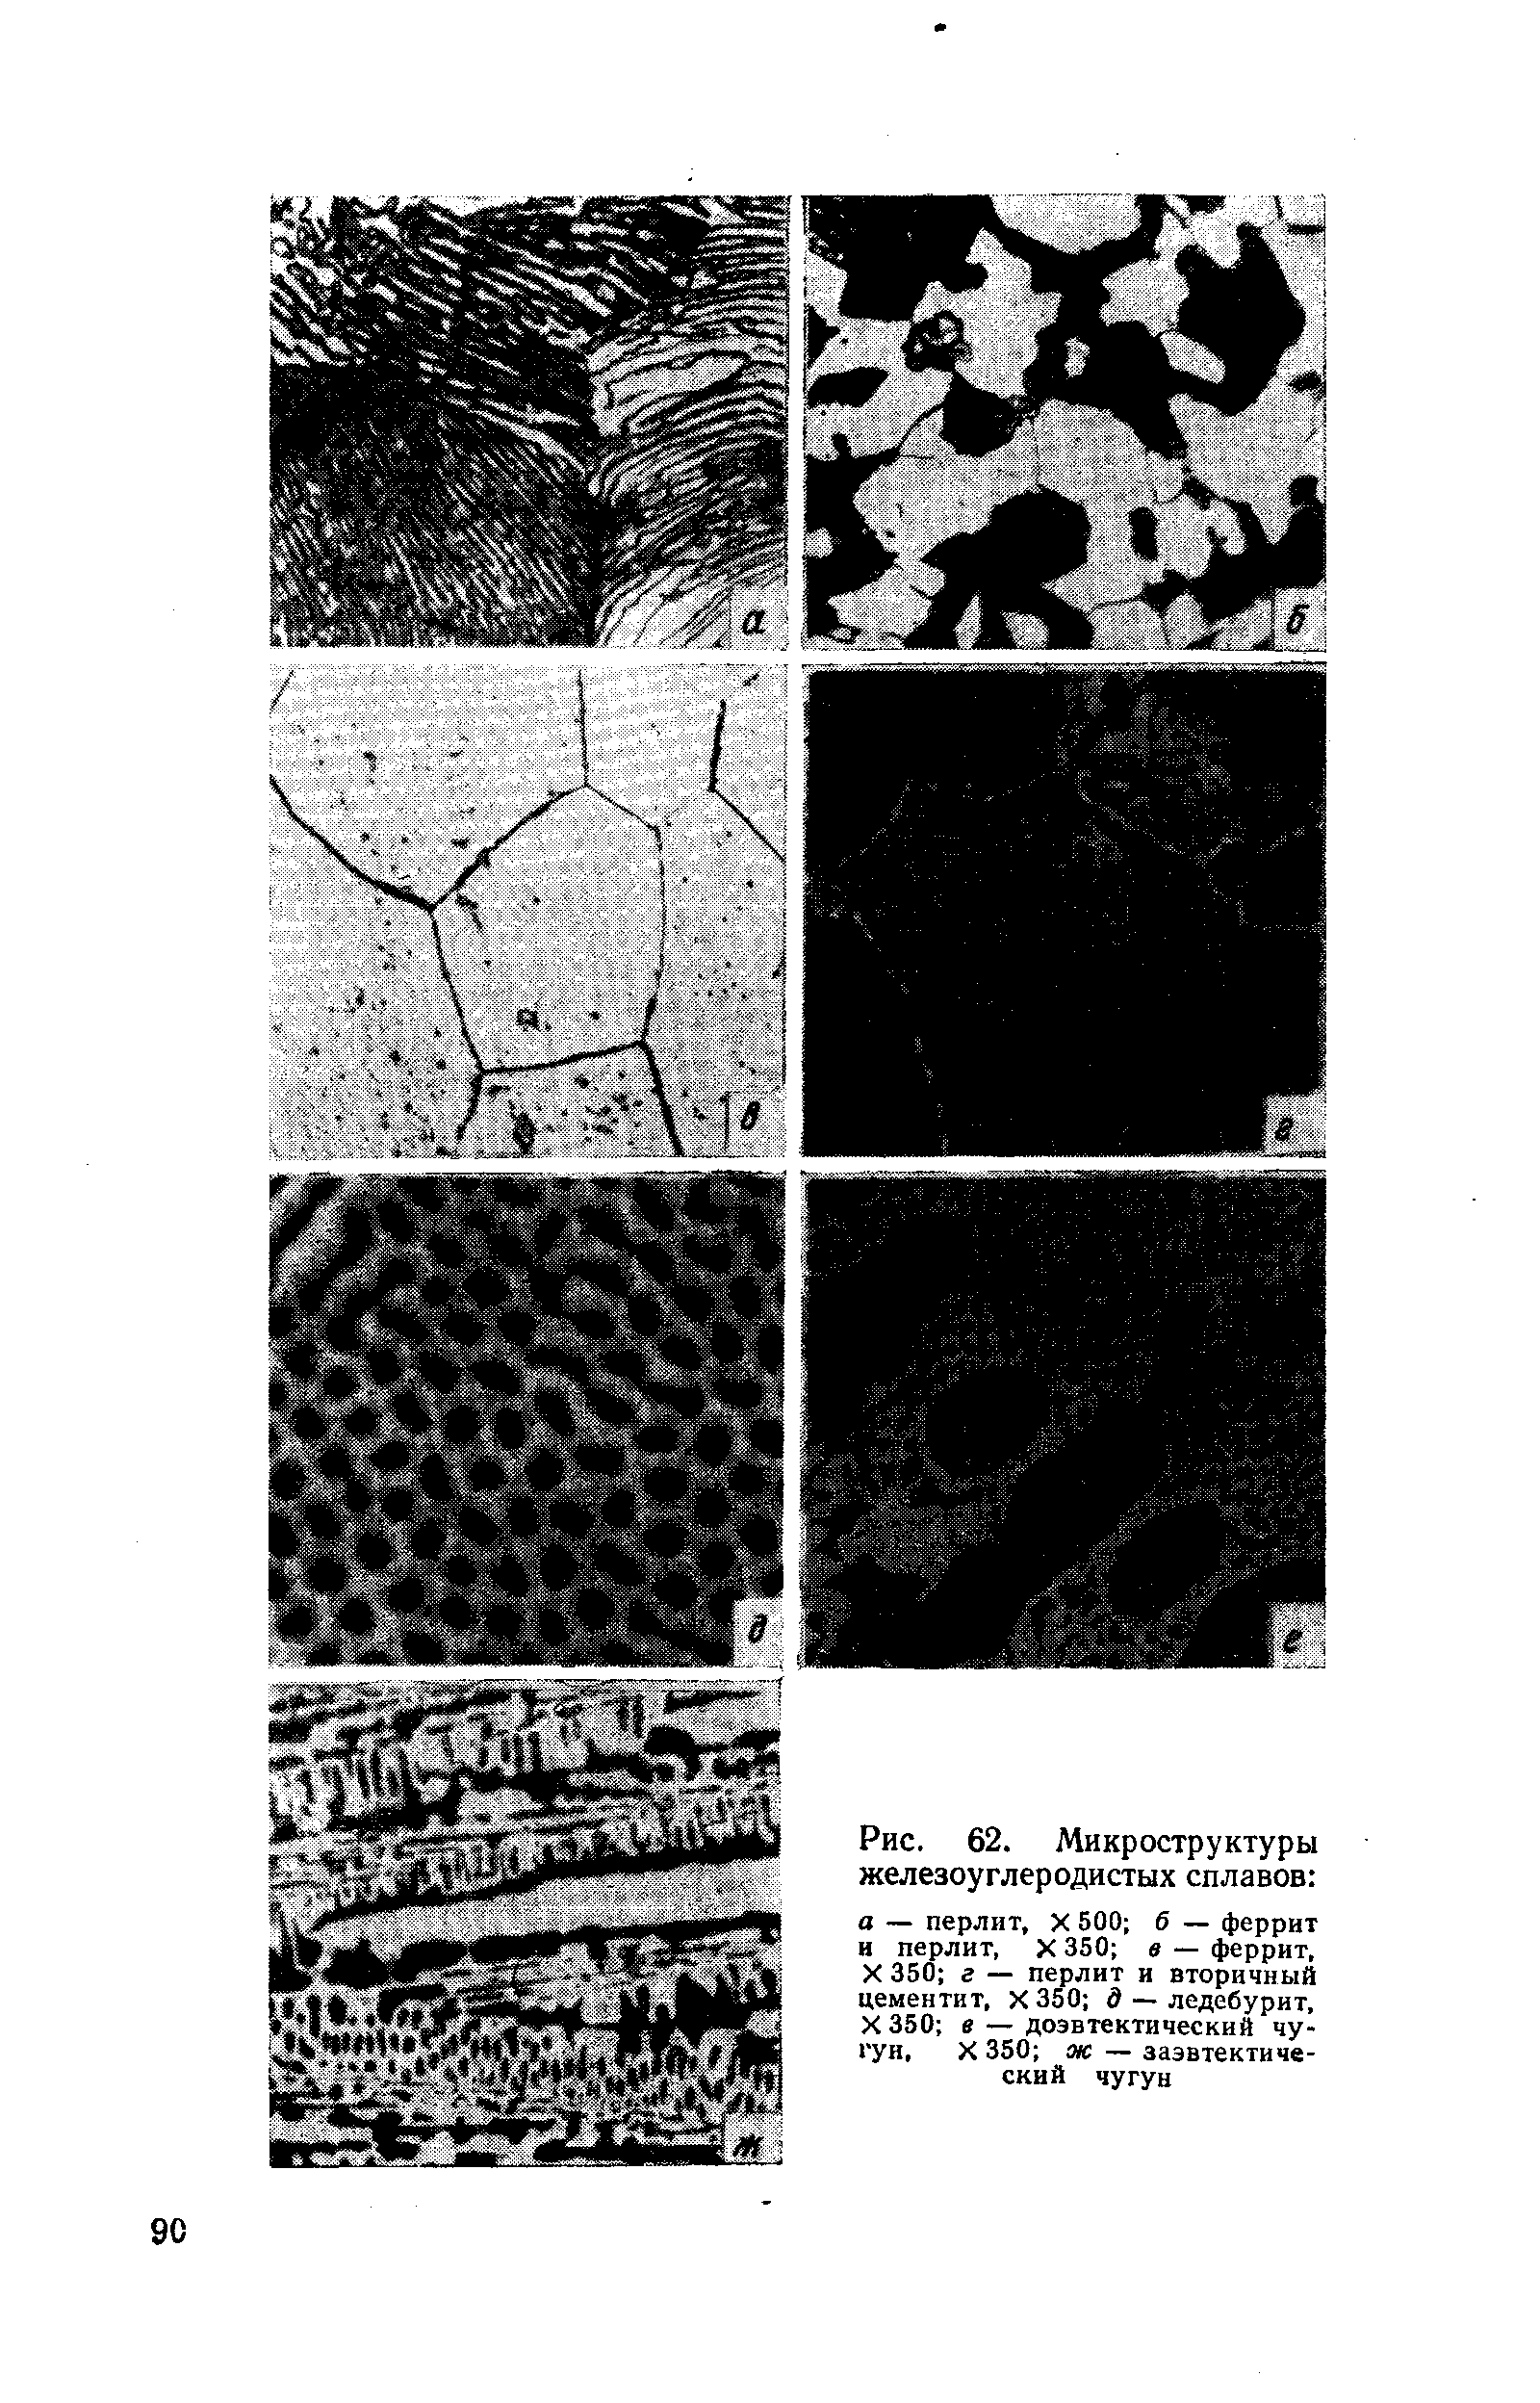 Рис. 62. Микроструктуры железоуглеродистых сплавов 
